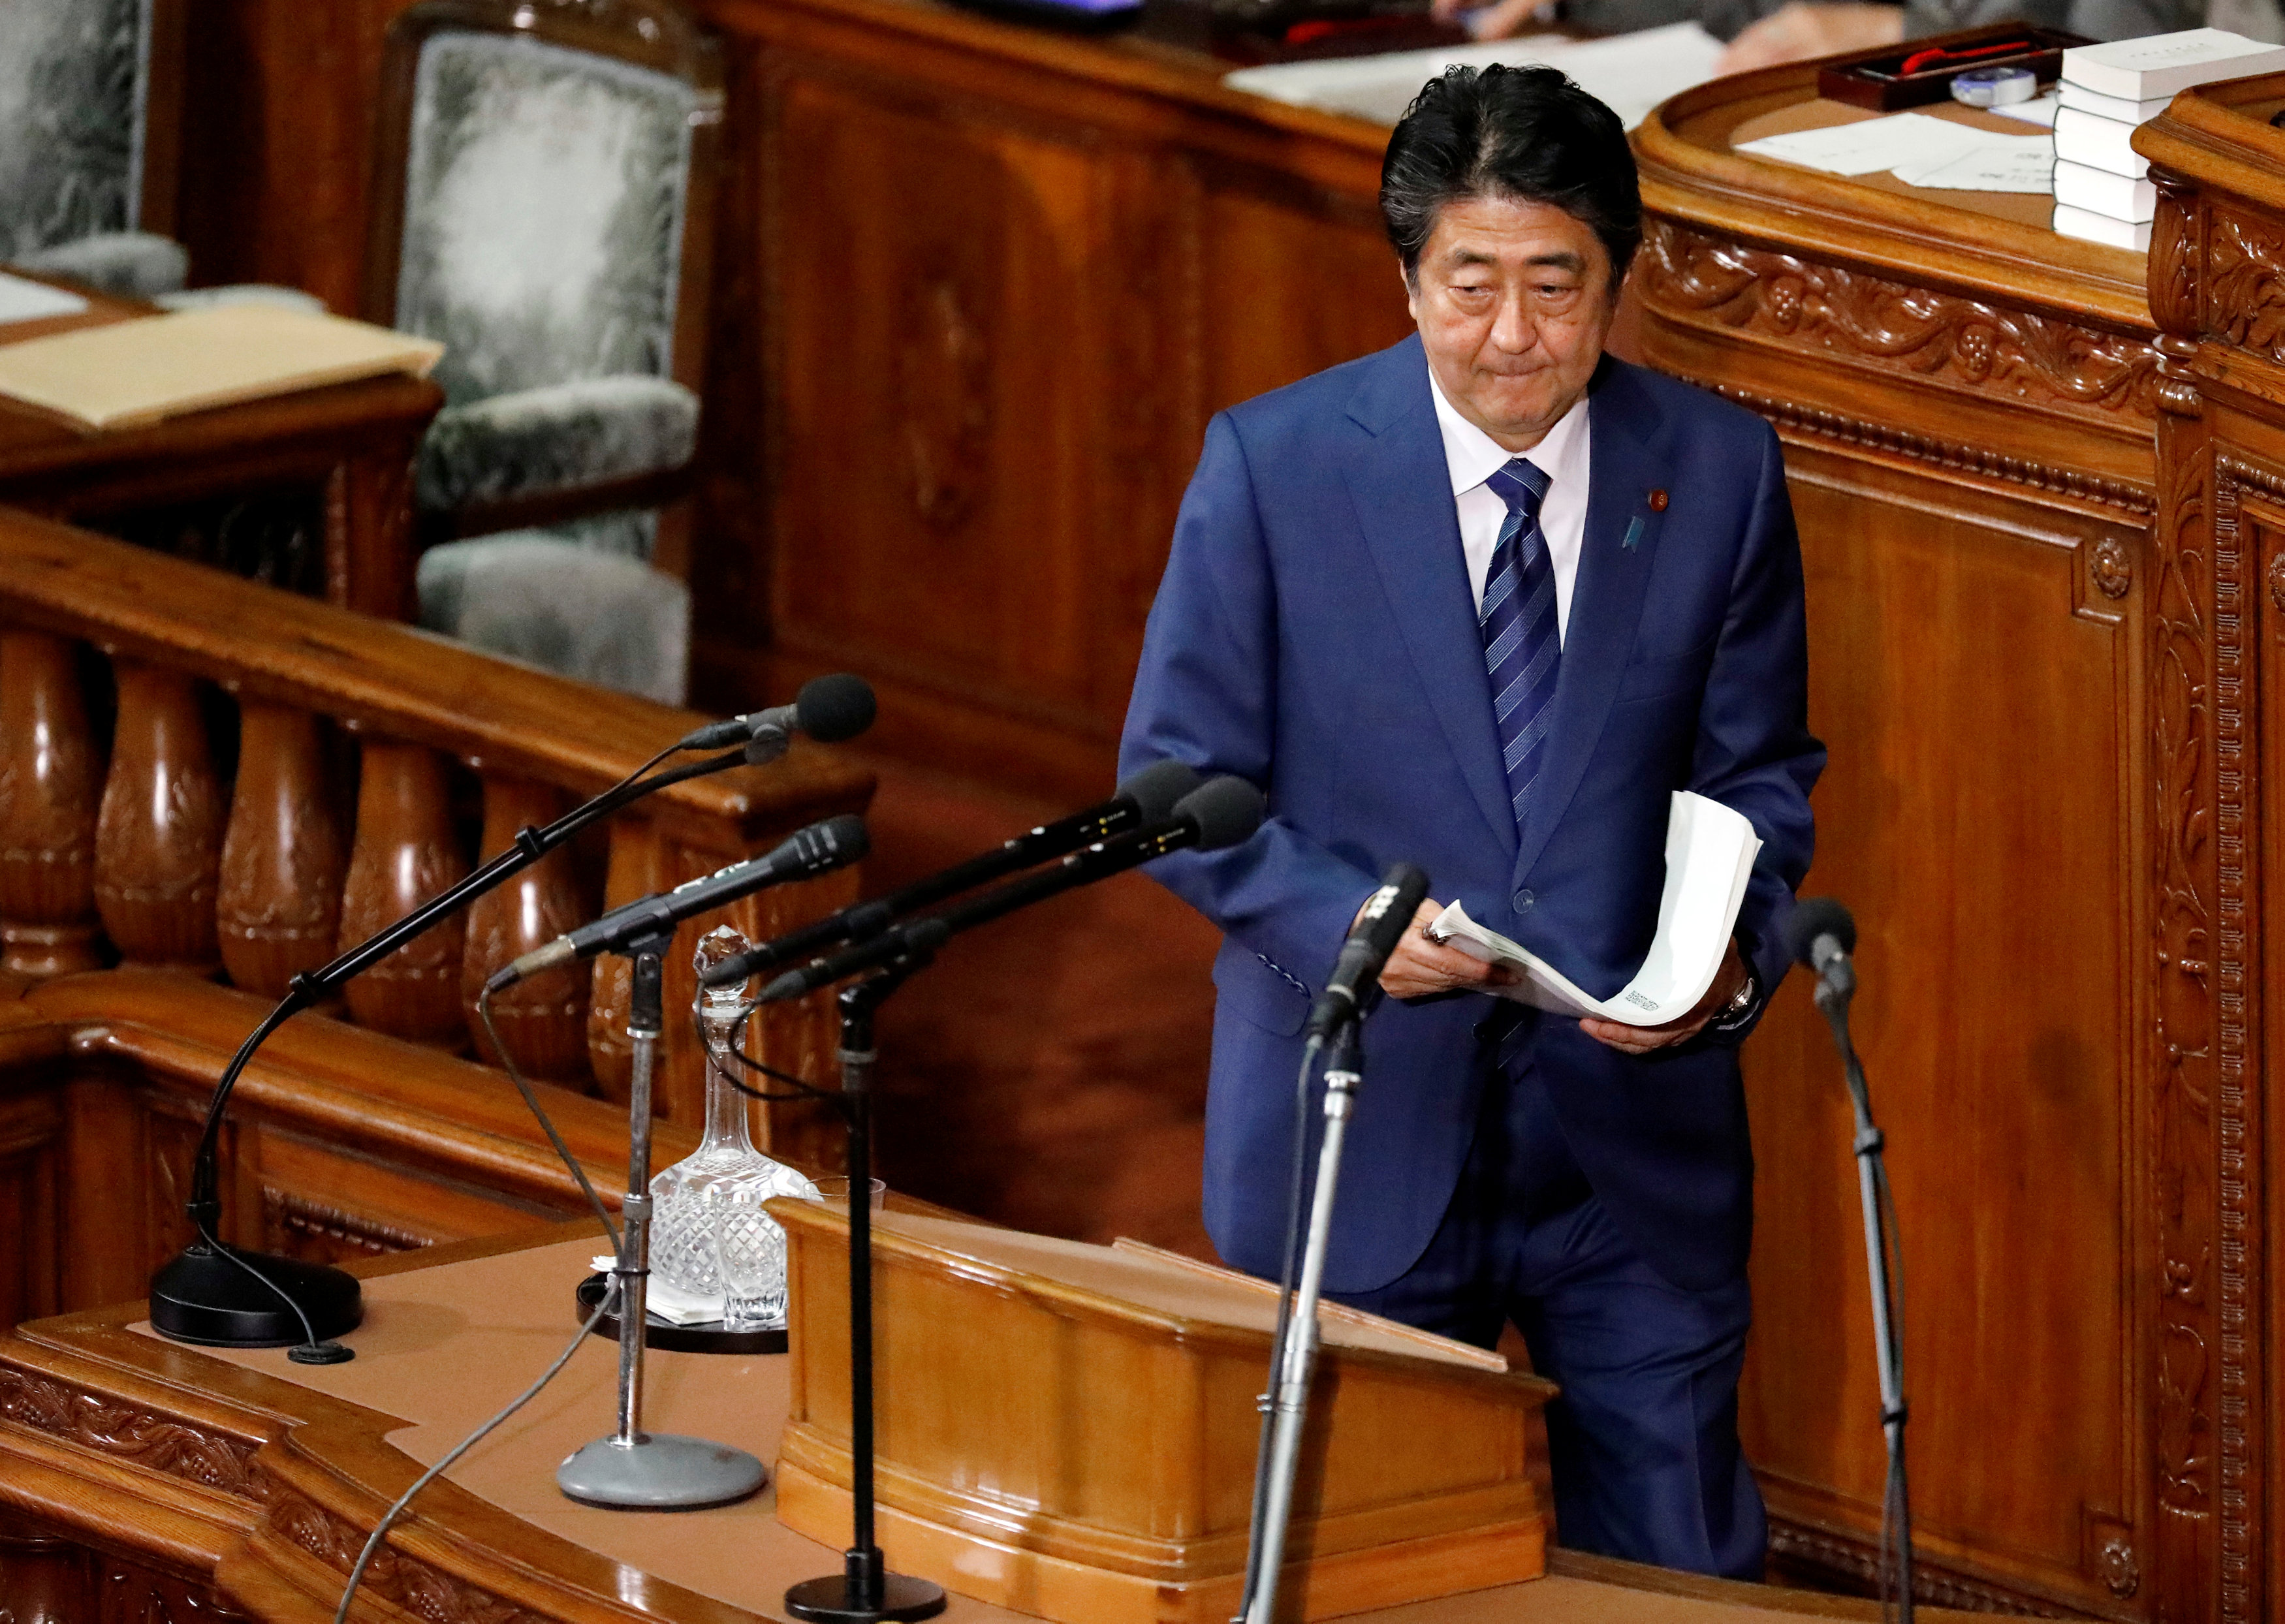 شينزو آبى بعد ختام كلمته أمام البرلمان اليابانى